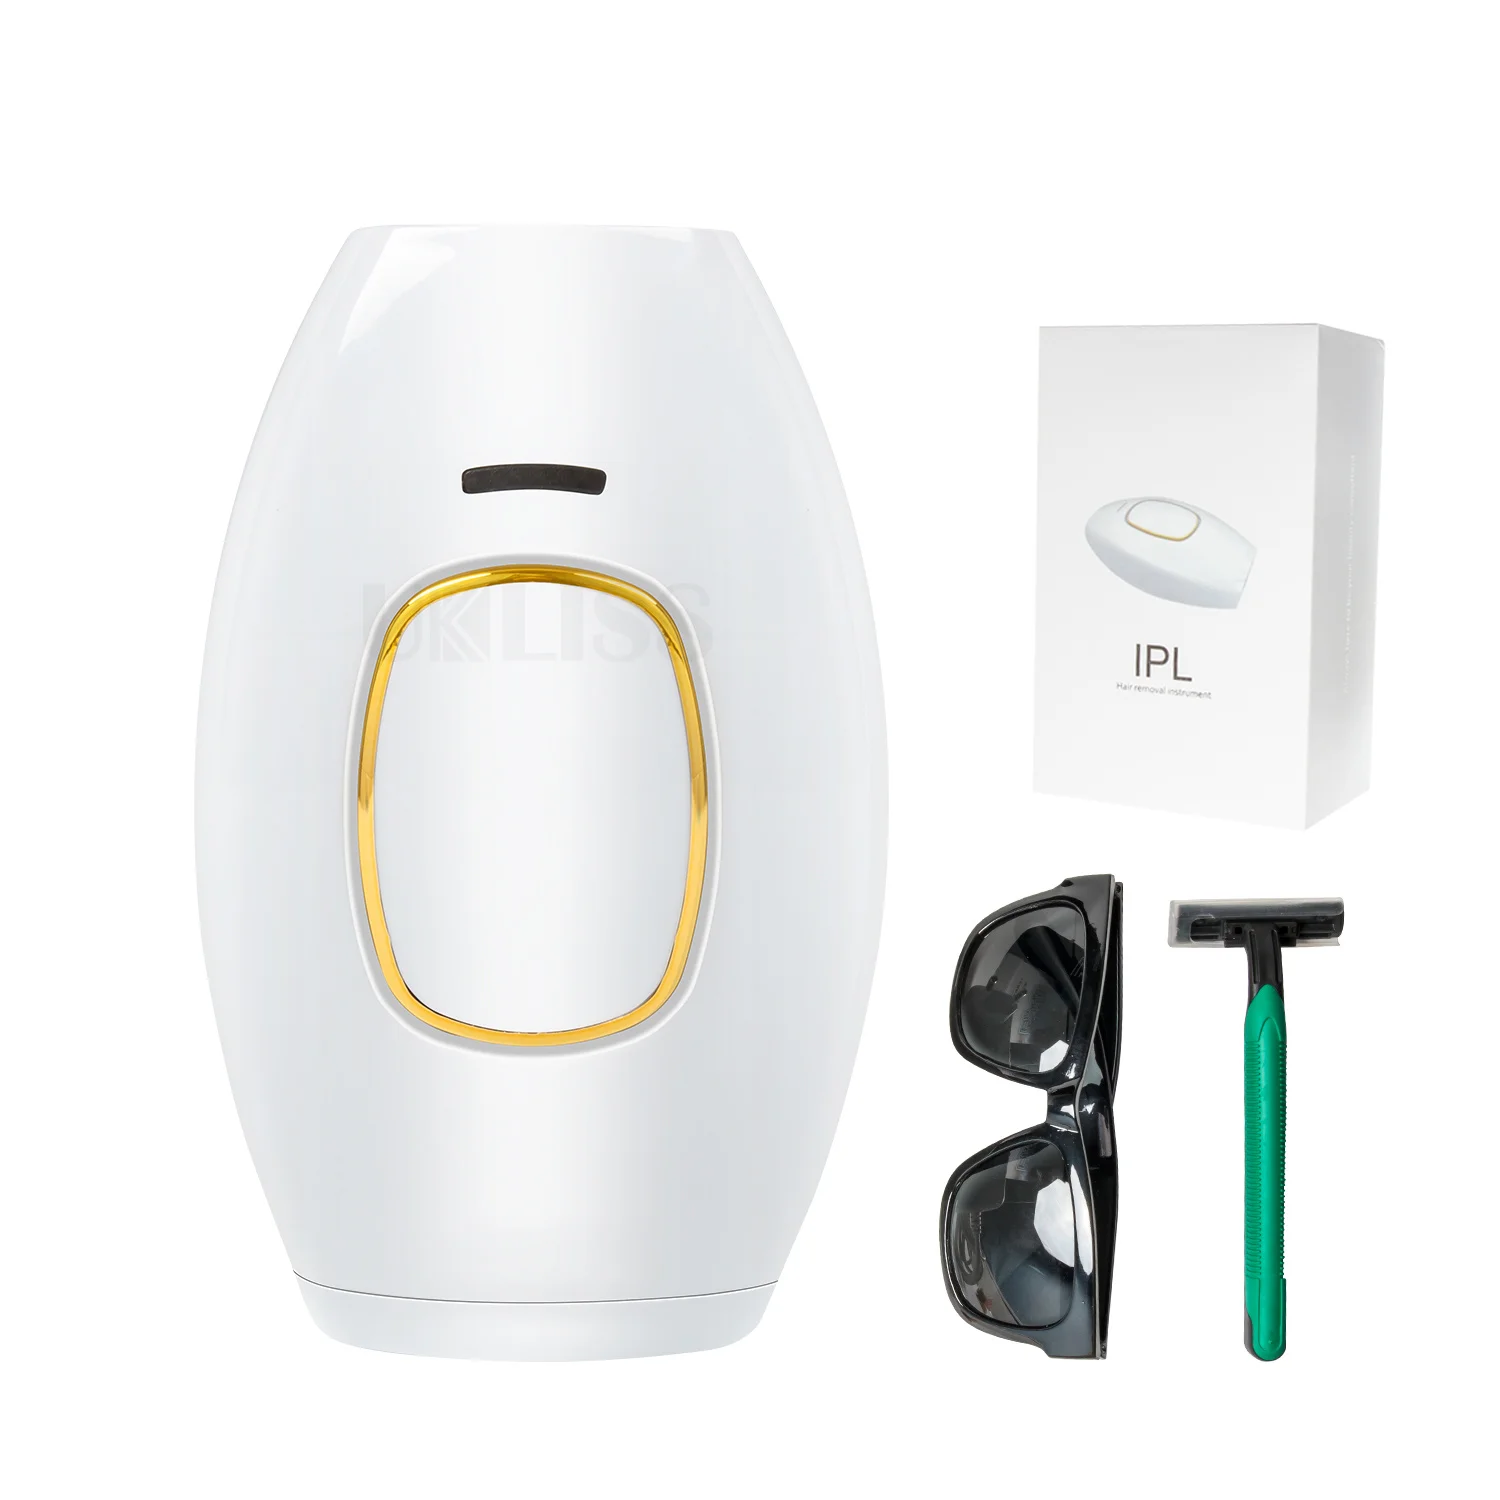 

Лазерное средство для безболезненного удаления волос IPL, мини-устройство для лица и эпилятор для тела, Женская бритва, устройства для домашн...